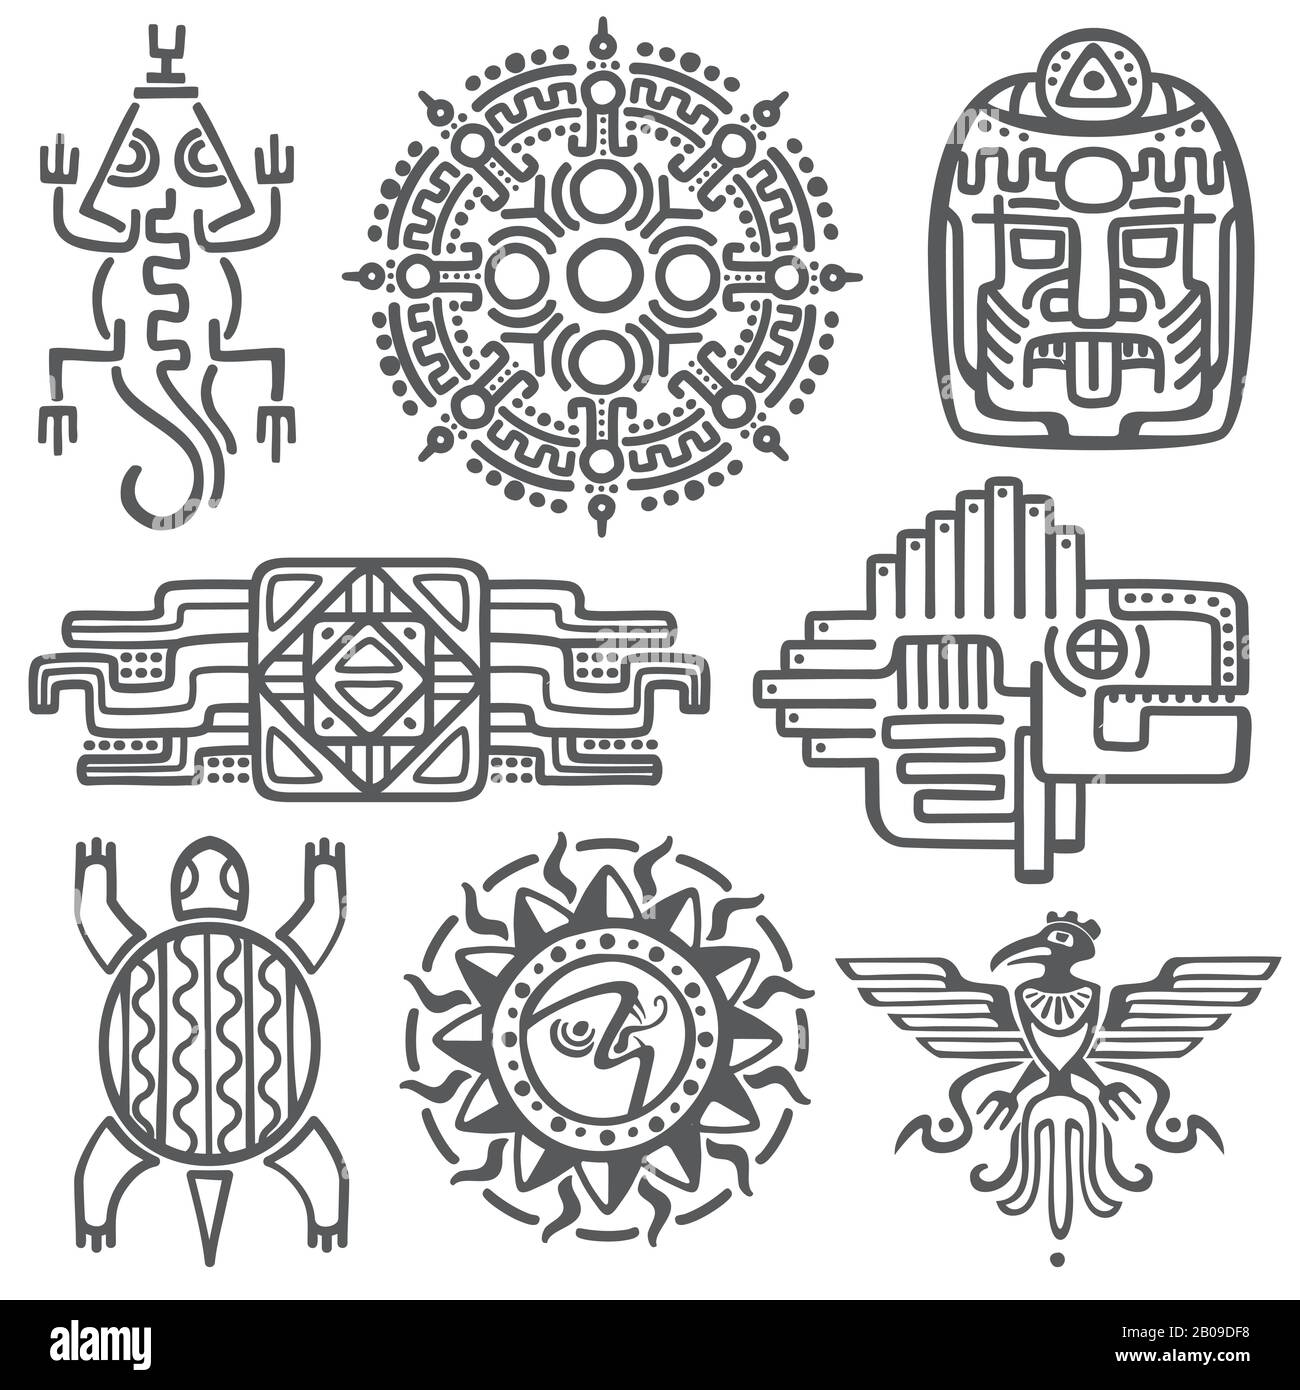 Symbole für die antike mexikanische Vektormythologie: Amerikanische aztekische, mayanische Kultur - einheimische Totemmuster. Aztec und mexican Tattoo, Illustration des maya-symbols Tattoo Stock Vektor